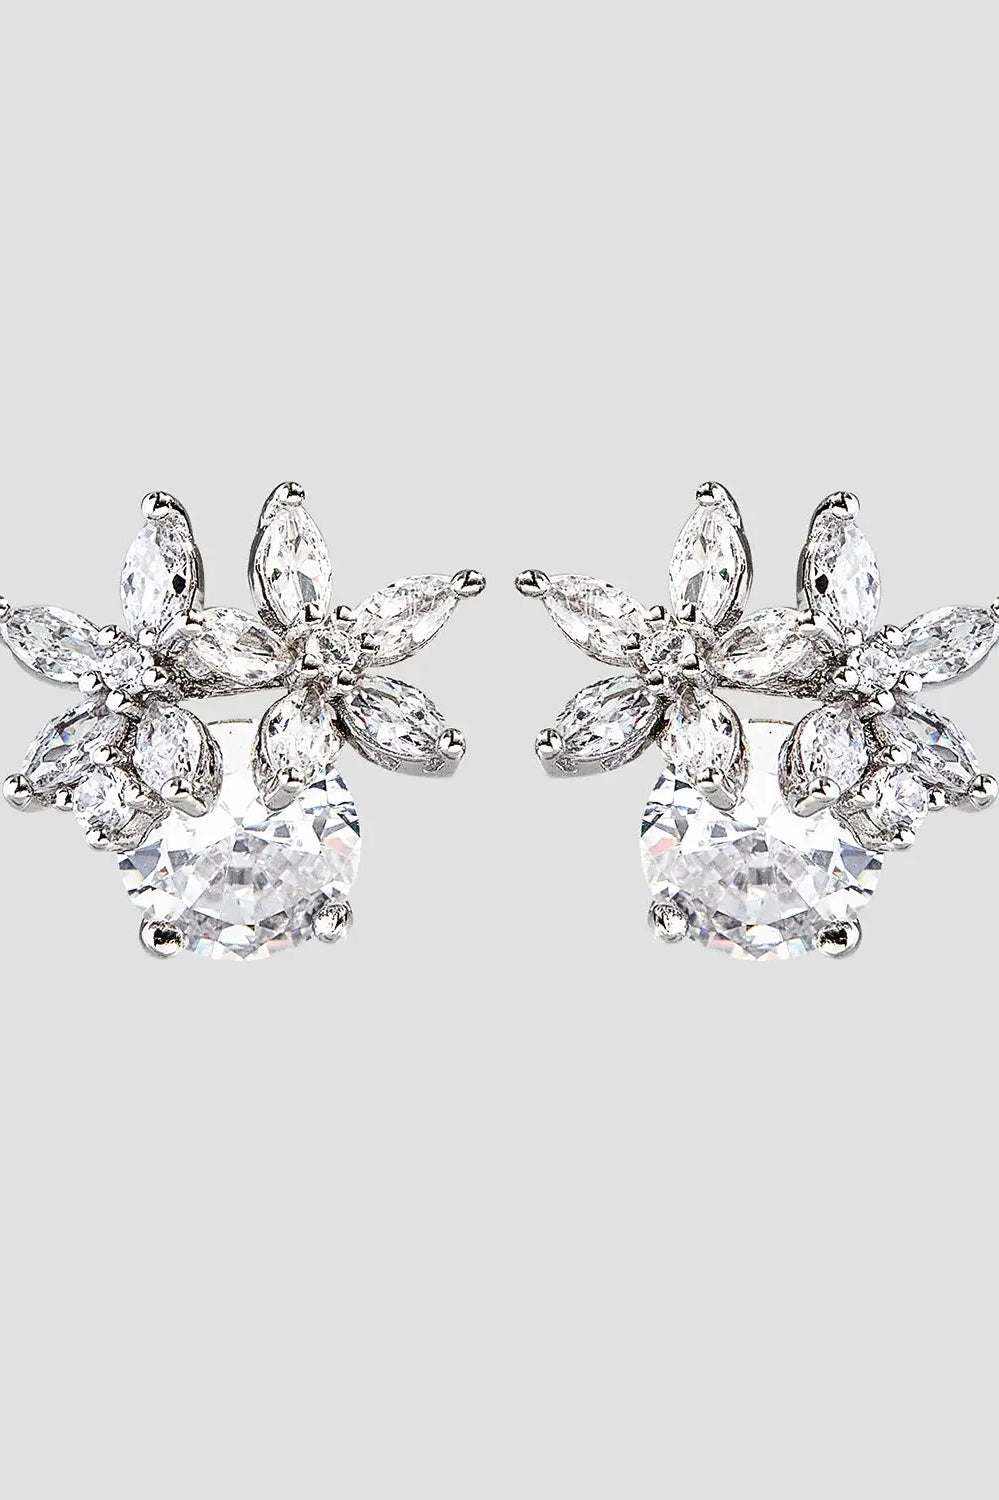 Zircon 925 Sterling Silver Flower Stud Earrings Trendsi